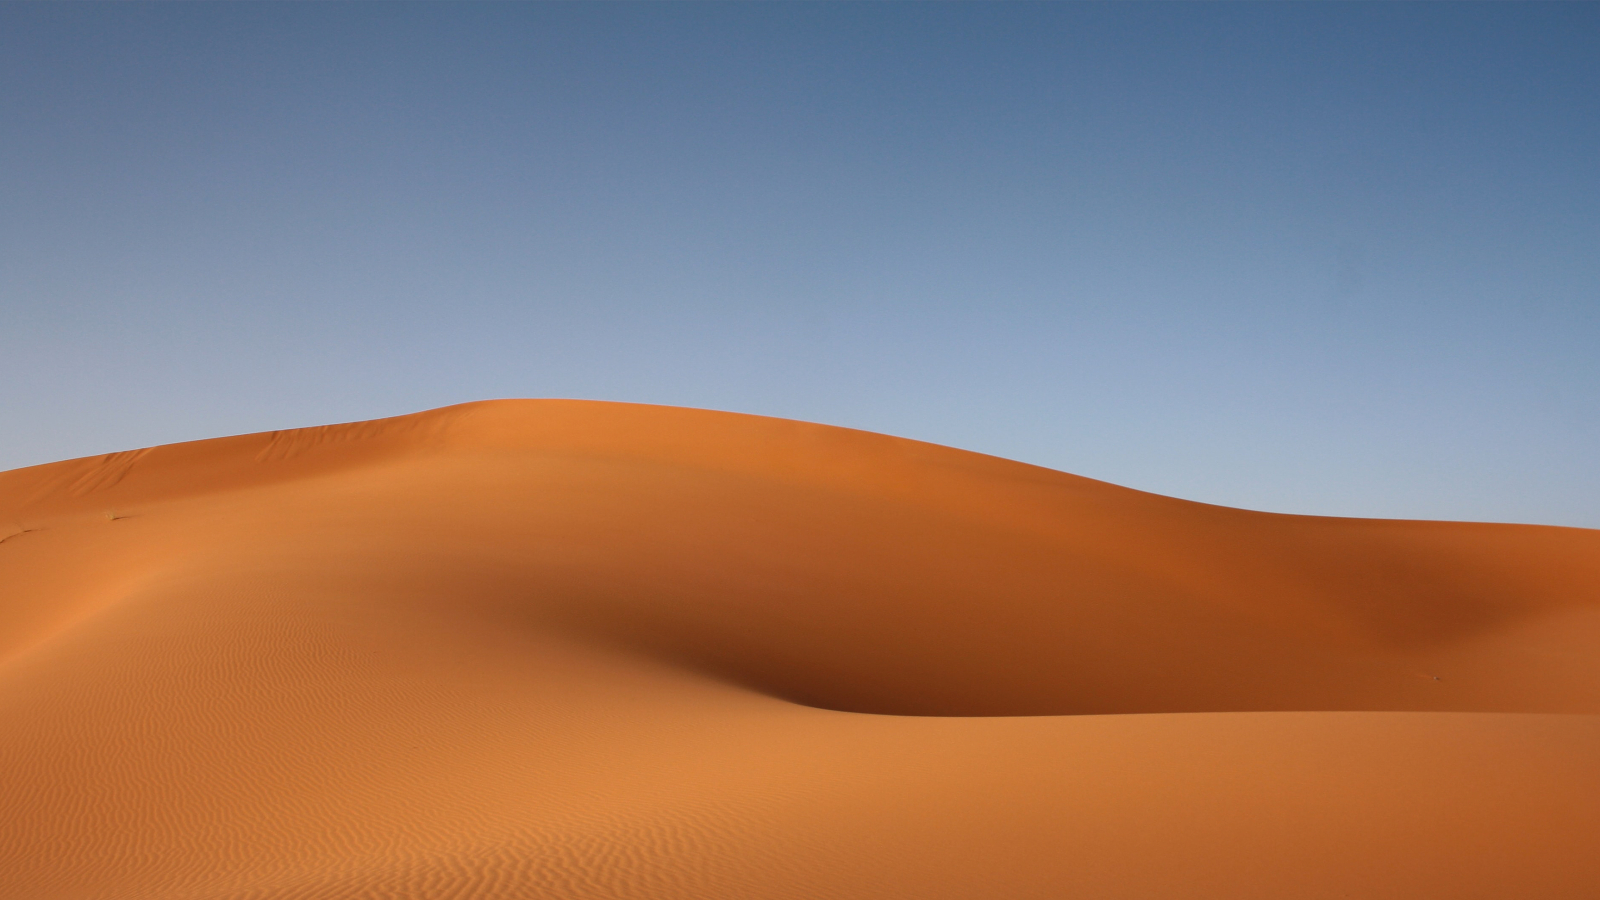 1600x900 Desert Sand Hd Dune 1600x900 Resolution Wallpaper Hd Nature